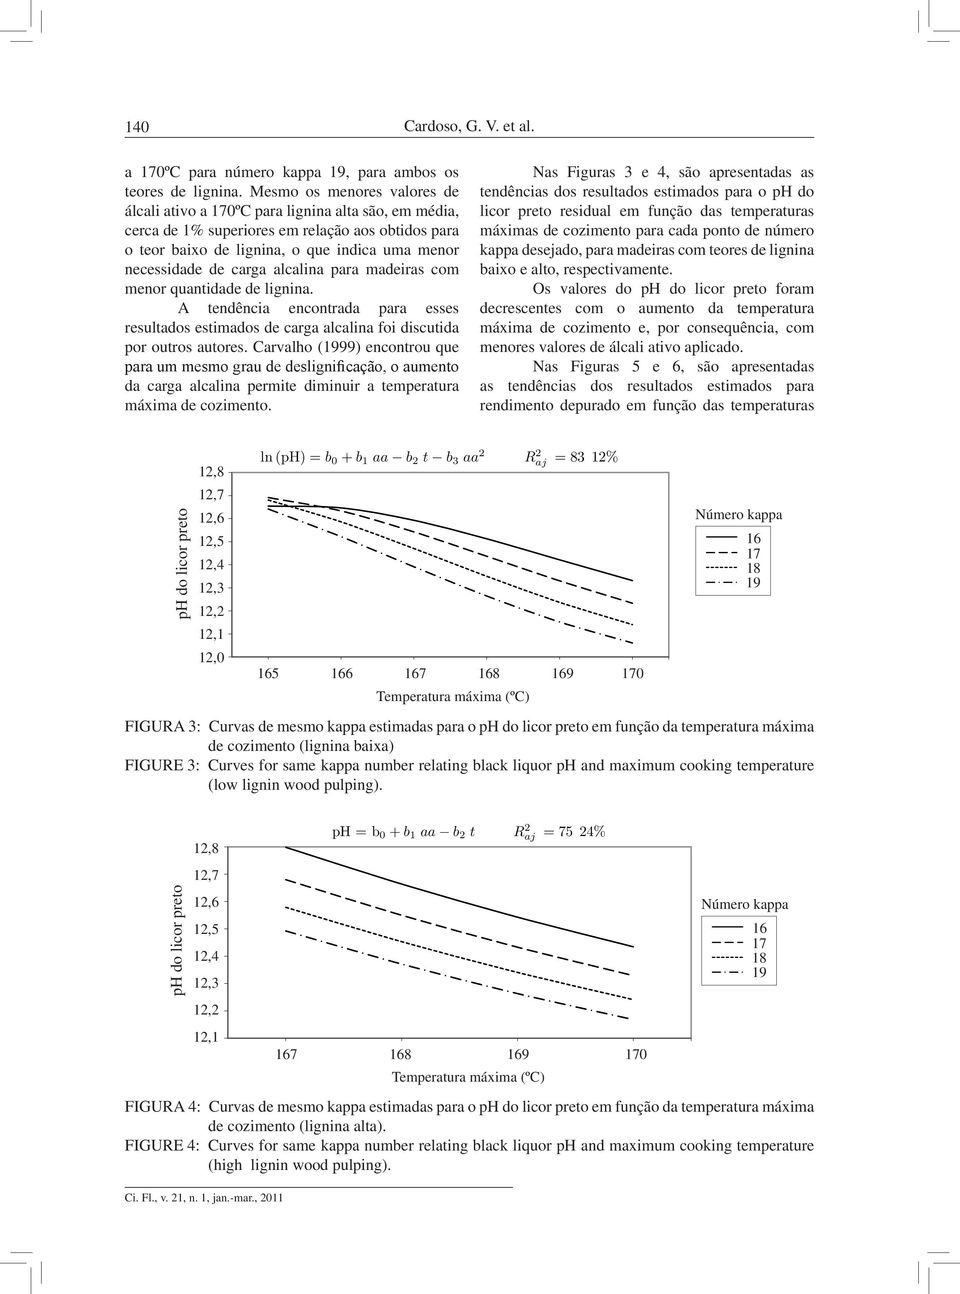 alcalina para madeiras com menor quantidade de lignina. A tendência encontrada para esses resultados estimados de carga alcalina foi discutida por outros autores.